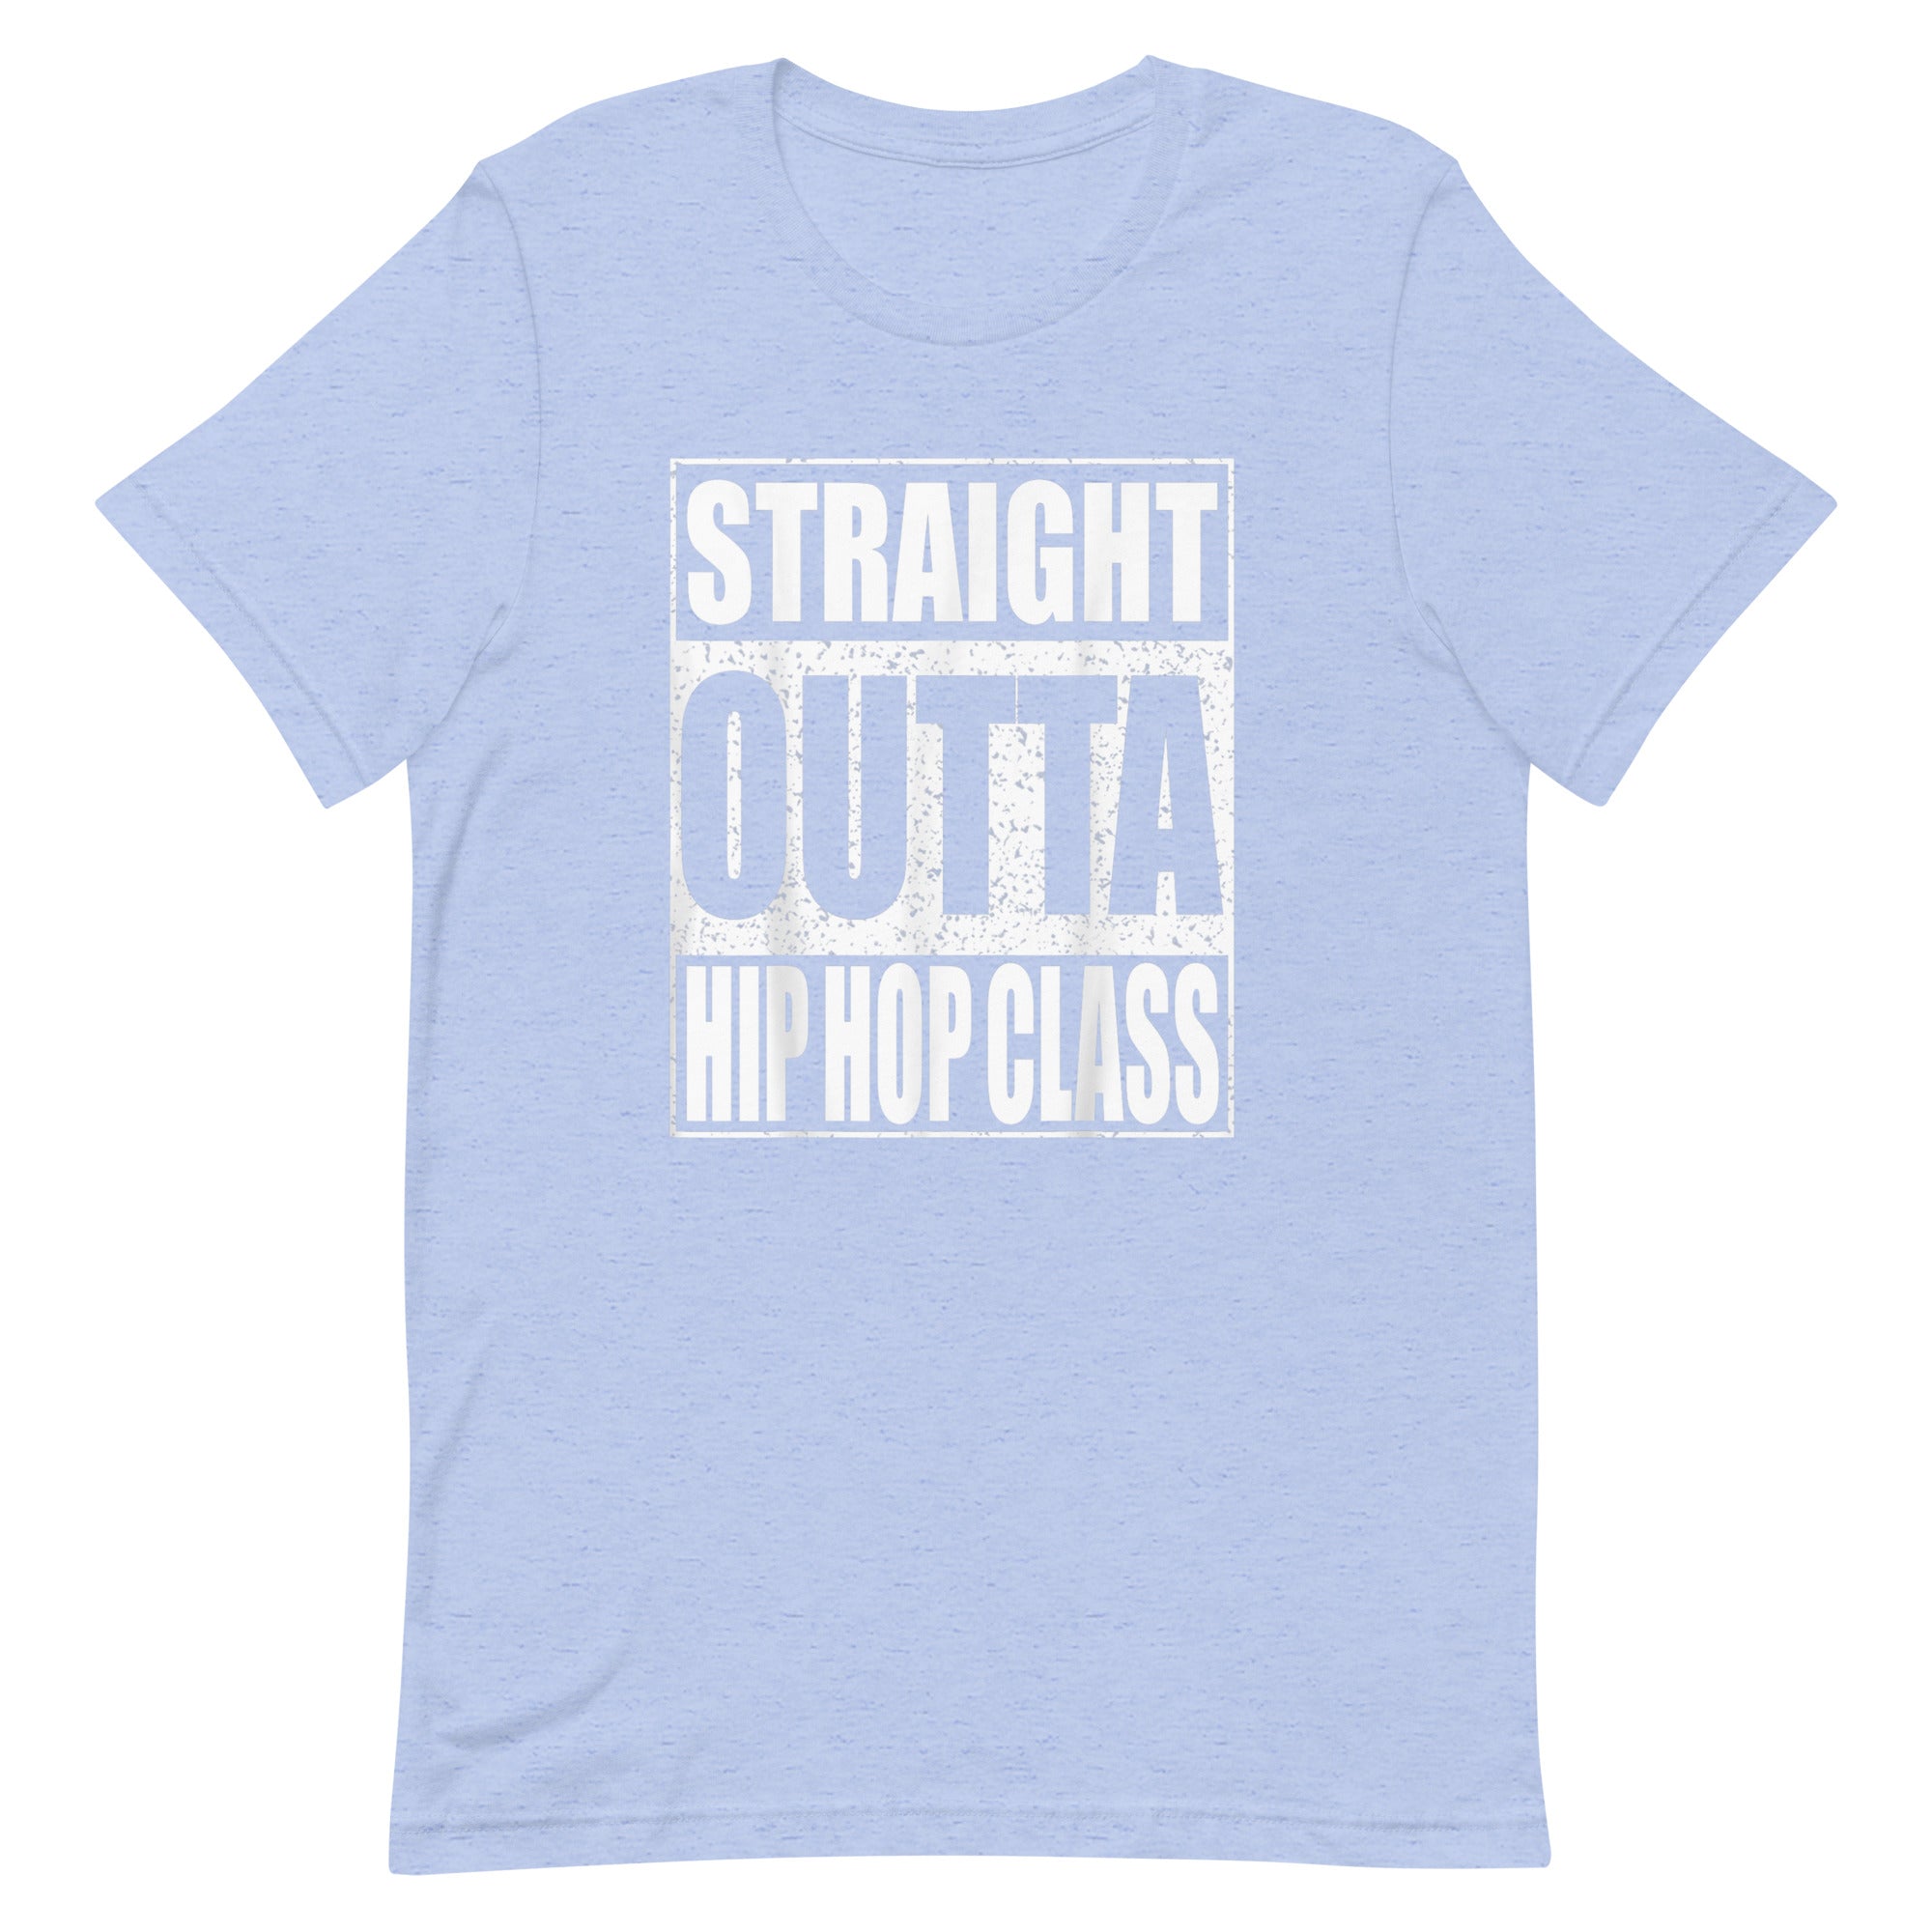 STRAIGHT OUTTA HIP HOP CLASS Unisex t-shirt - Hiphopya